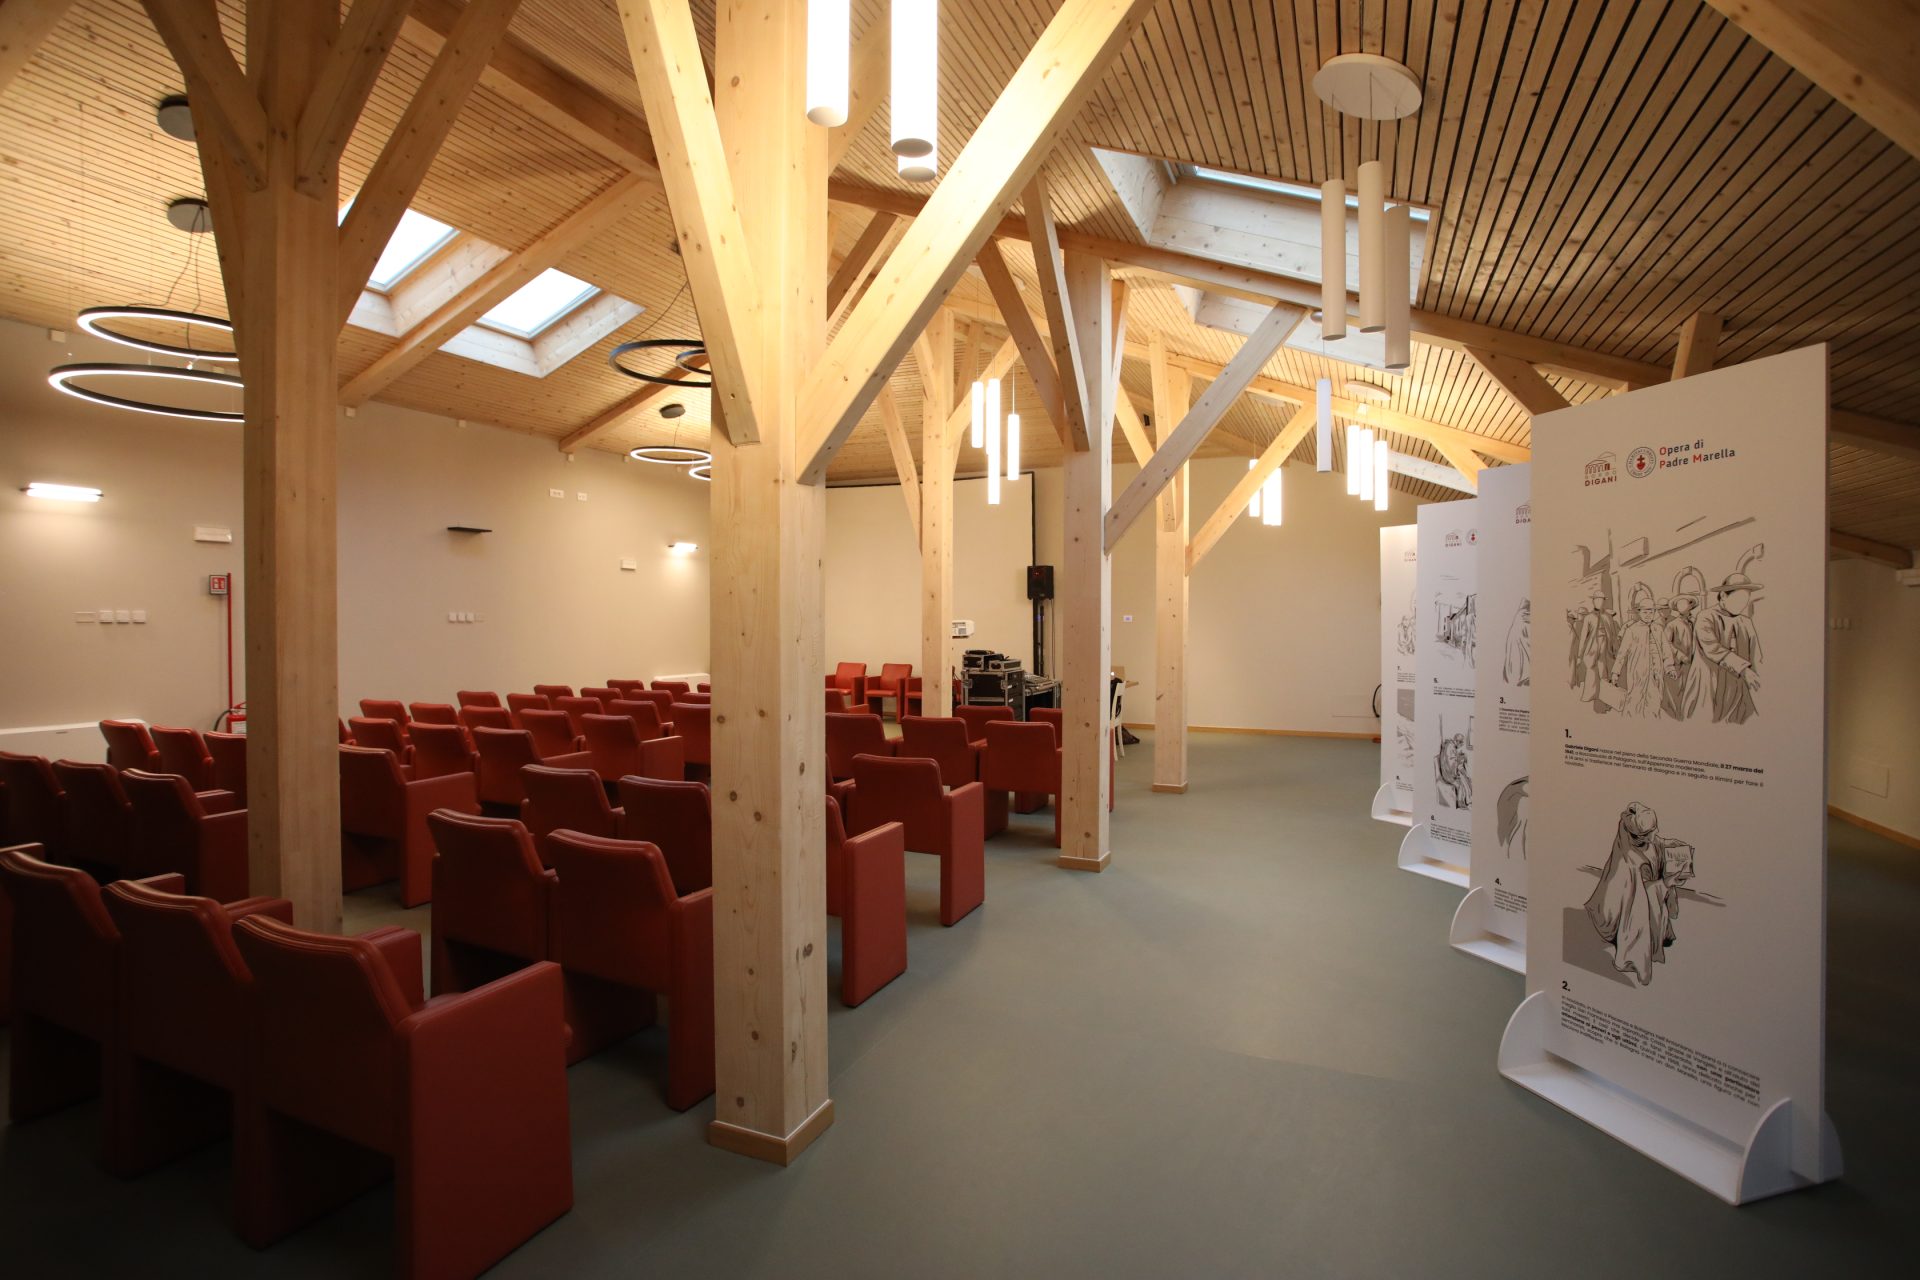 L'interno dell'auditorium, realizzato in legno chiaro e con sedie rosse, sulla destra una serie di pannelli bianchi con scritte